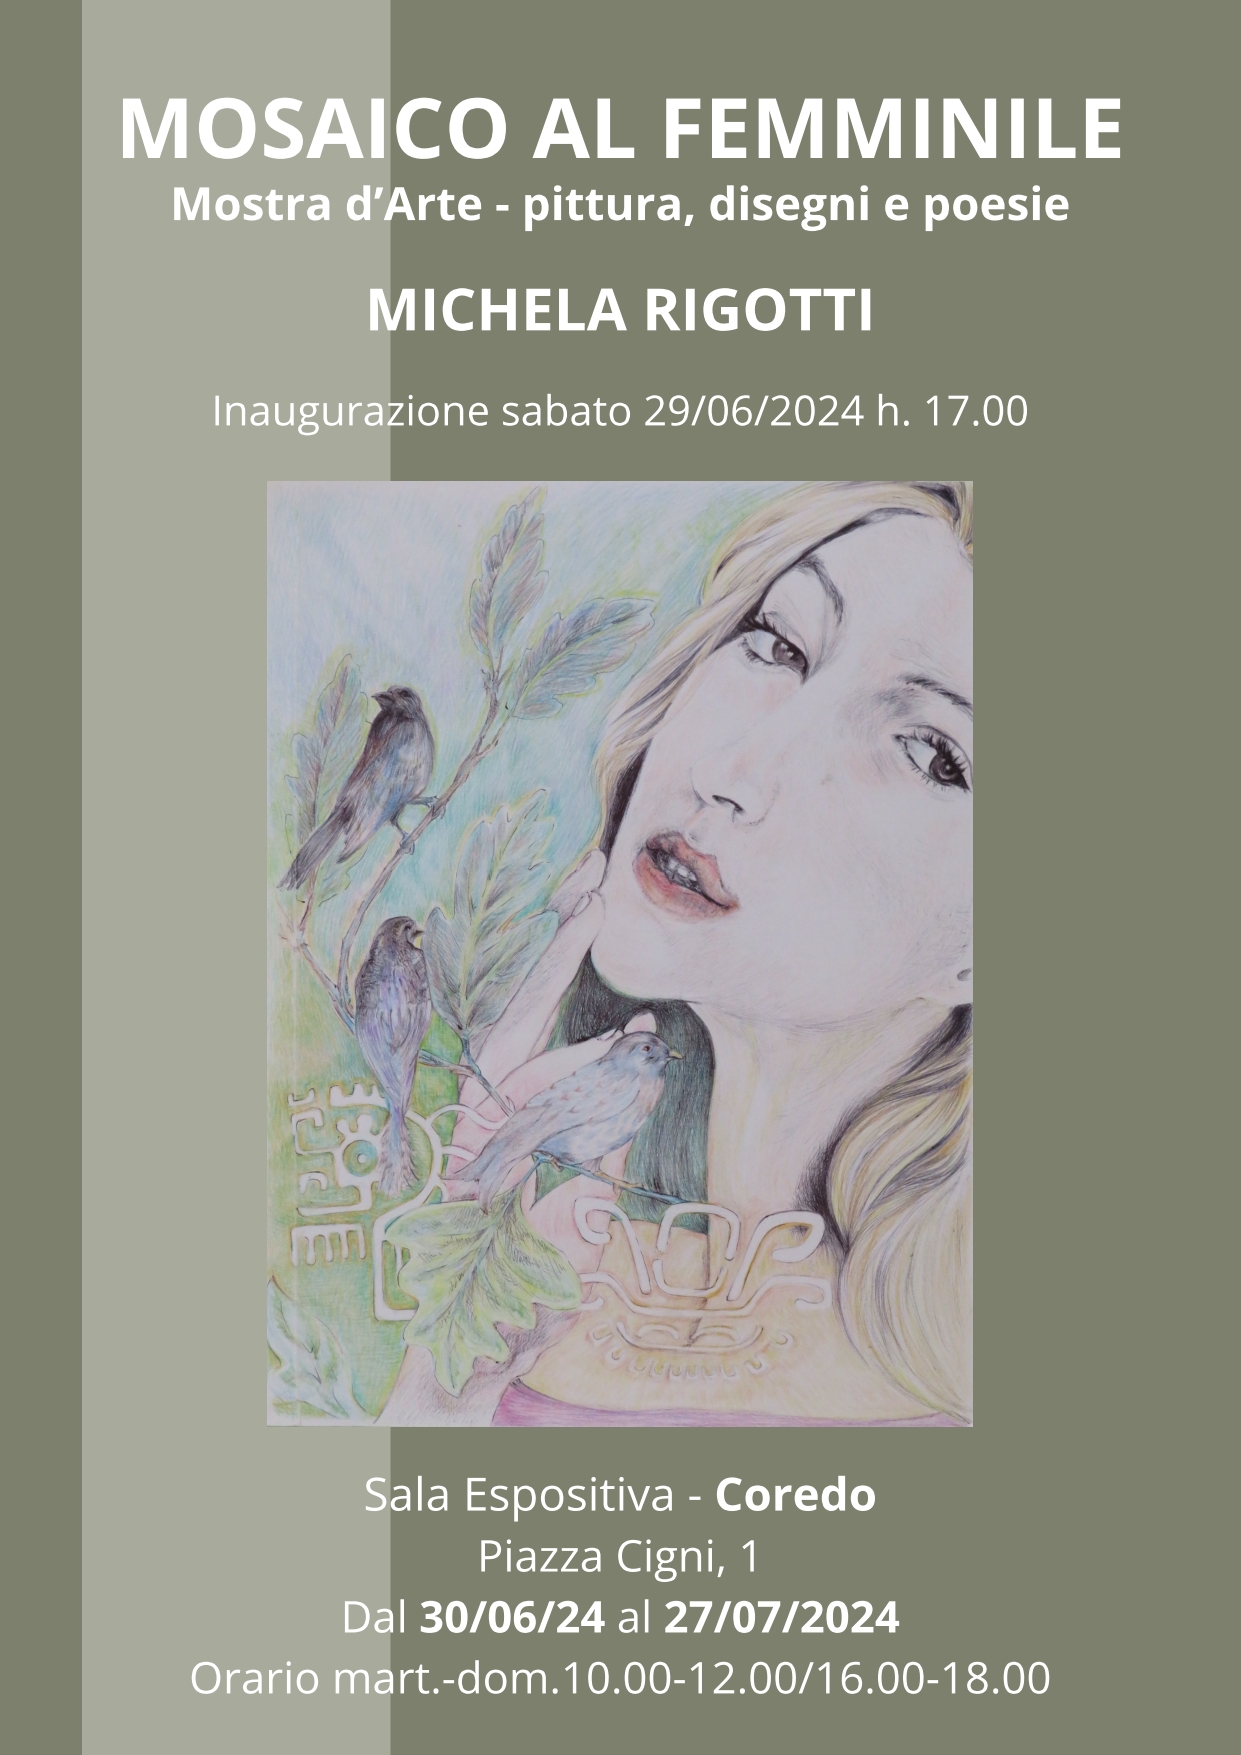 Mosaico al femminile – Michela Rigotti